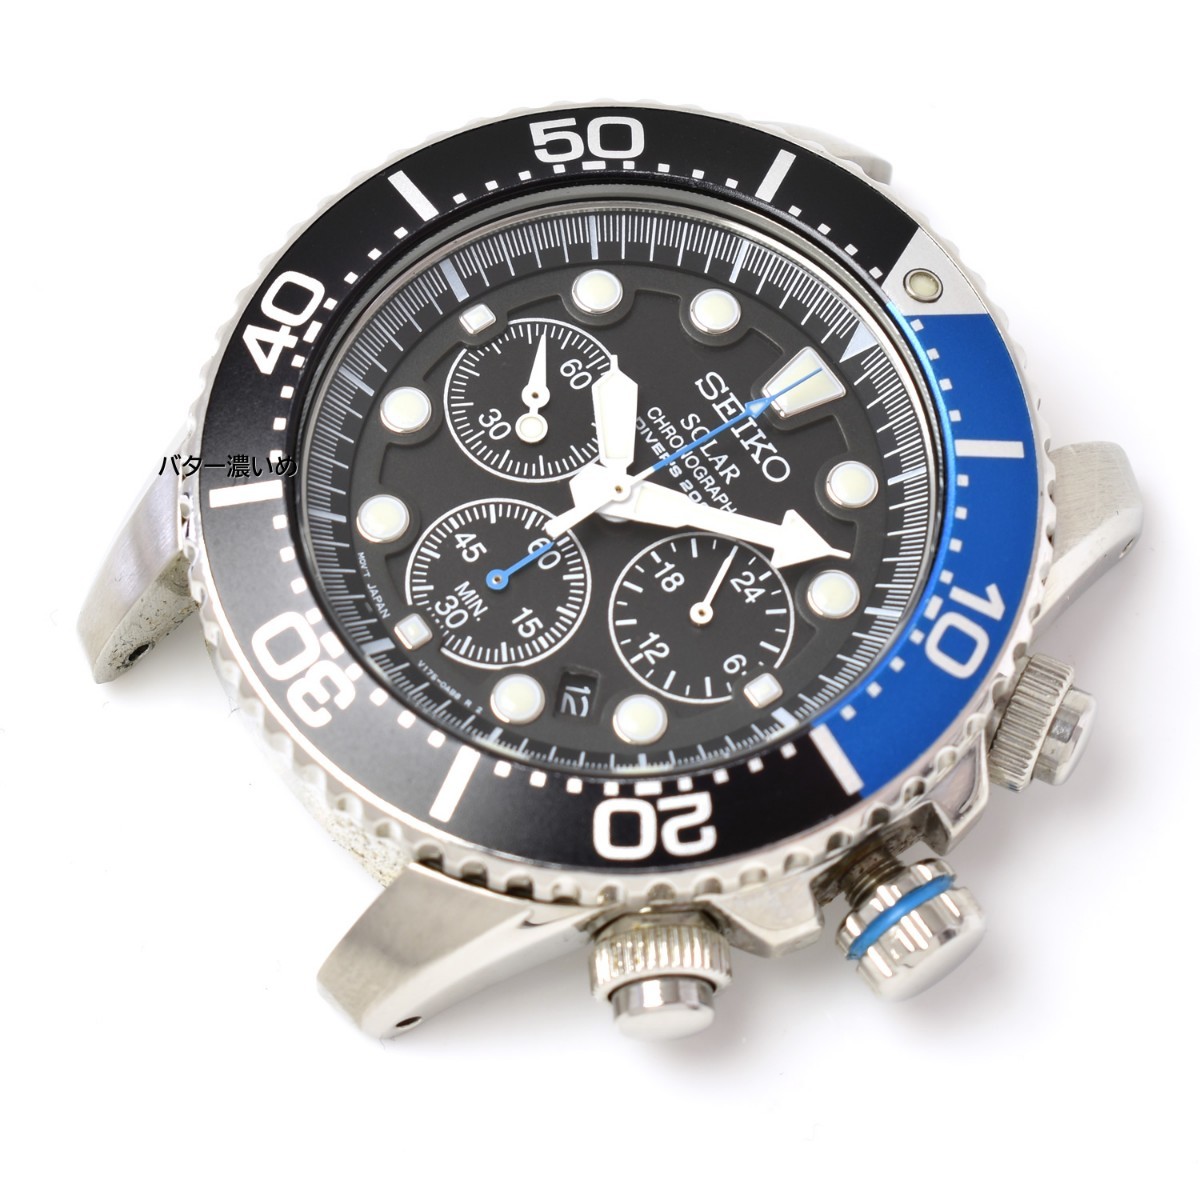 セイコー SEIKO メンズ腕時計 海外モデル クロノグラフ ソーラー クオーツ ダイバーズウォッチ 200M防水 SSC017P1 中古品